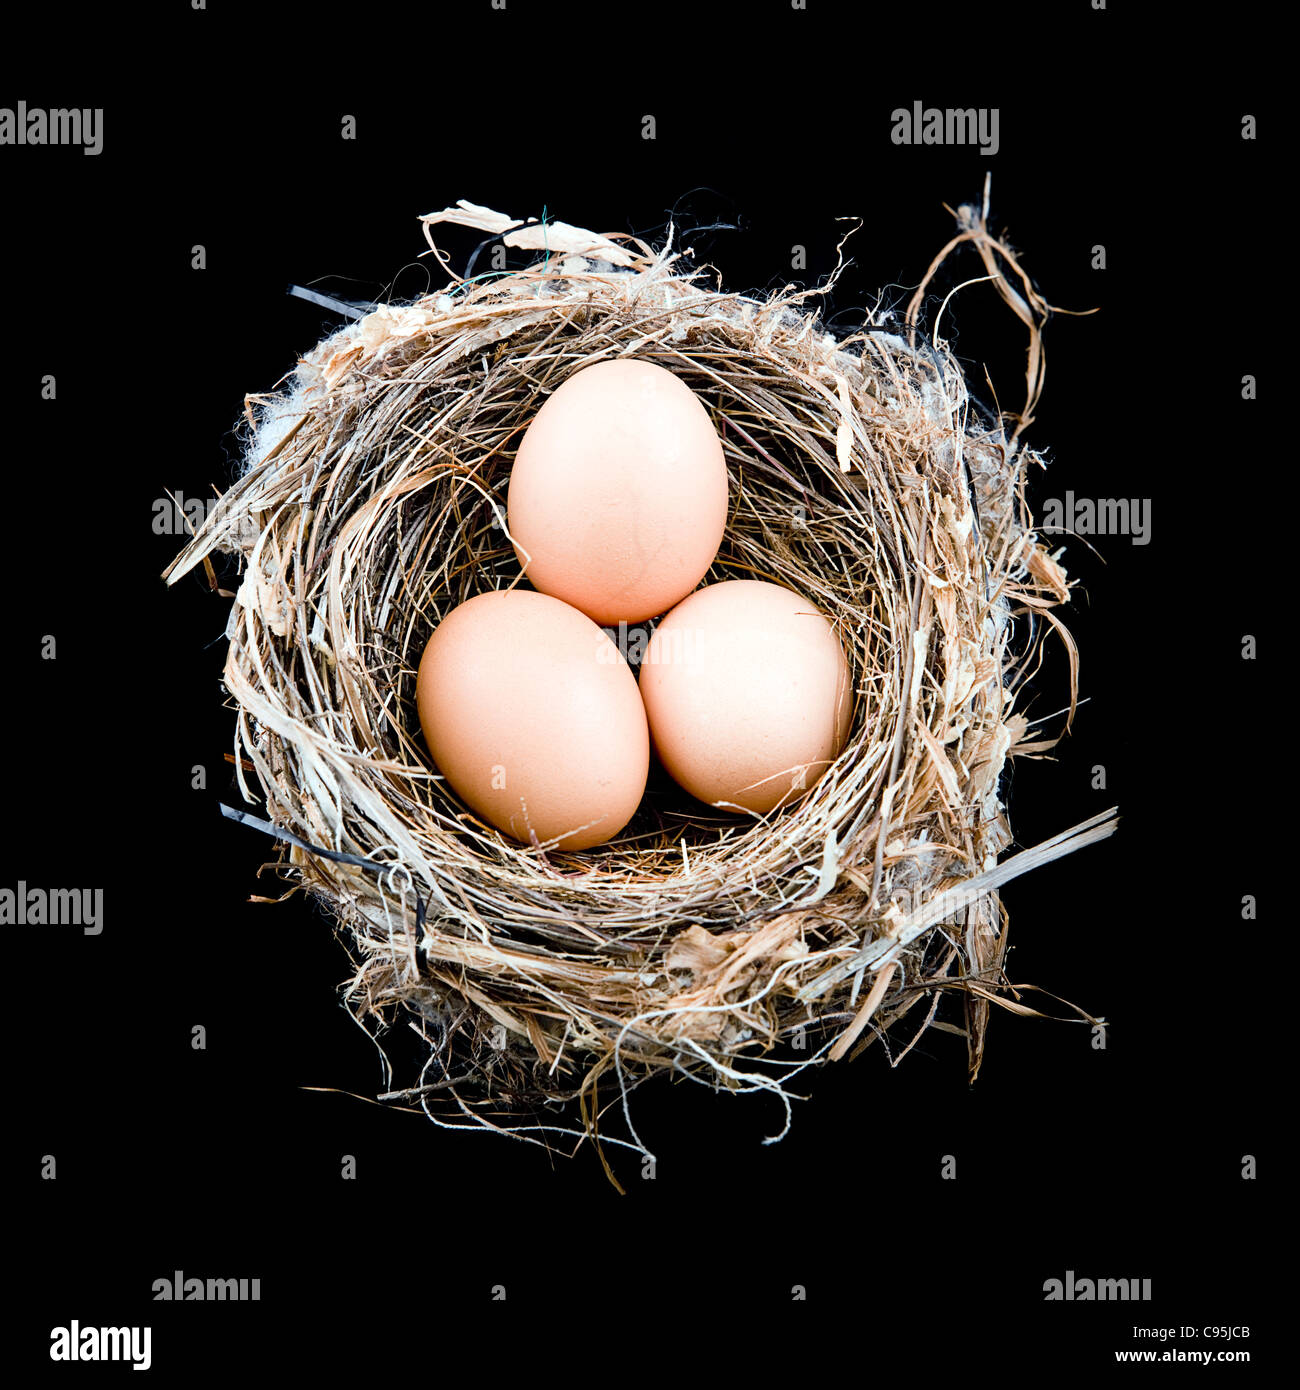 3 x le uova in un nido di uccelli Foto Stock